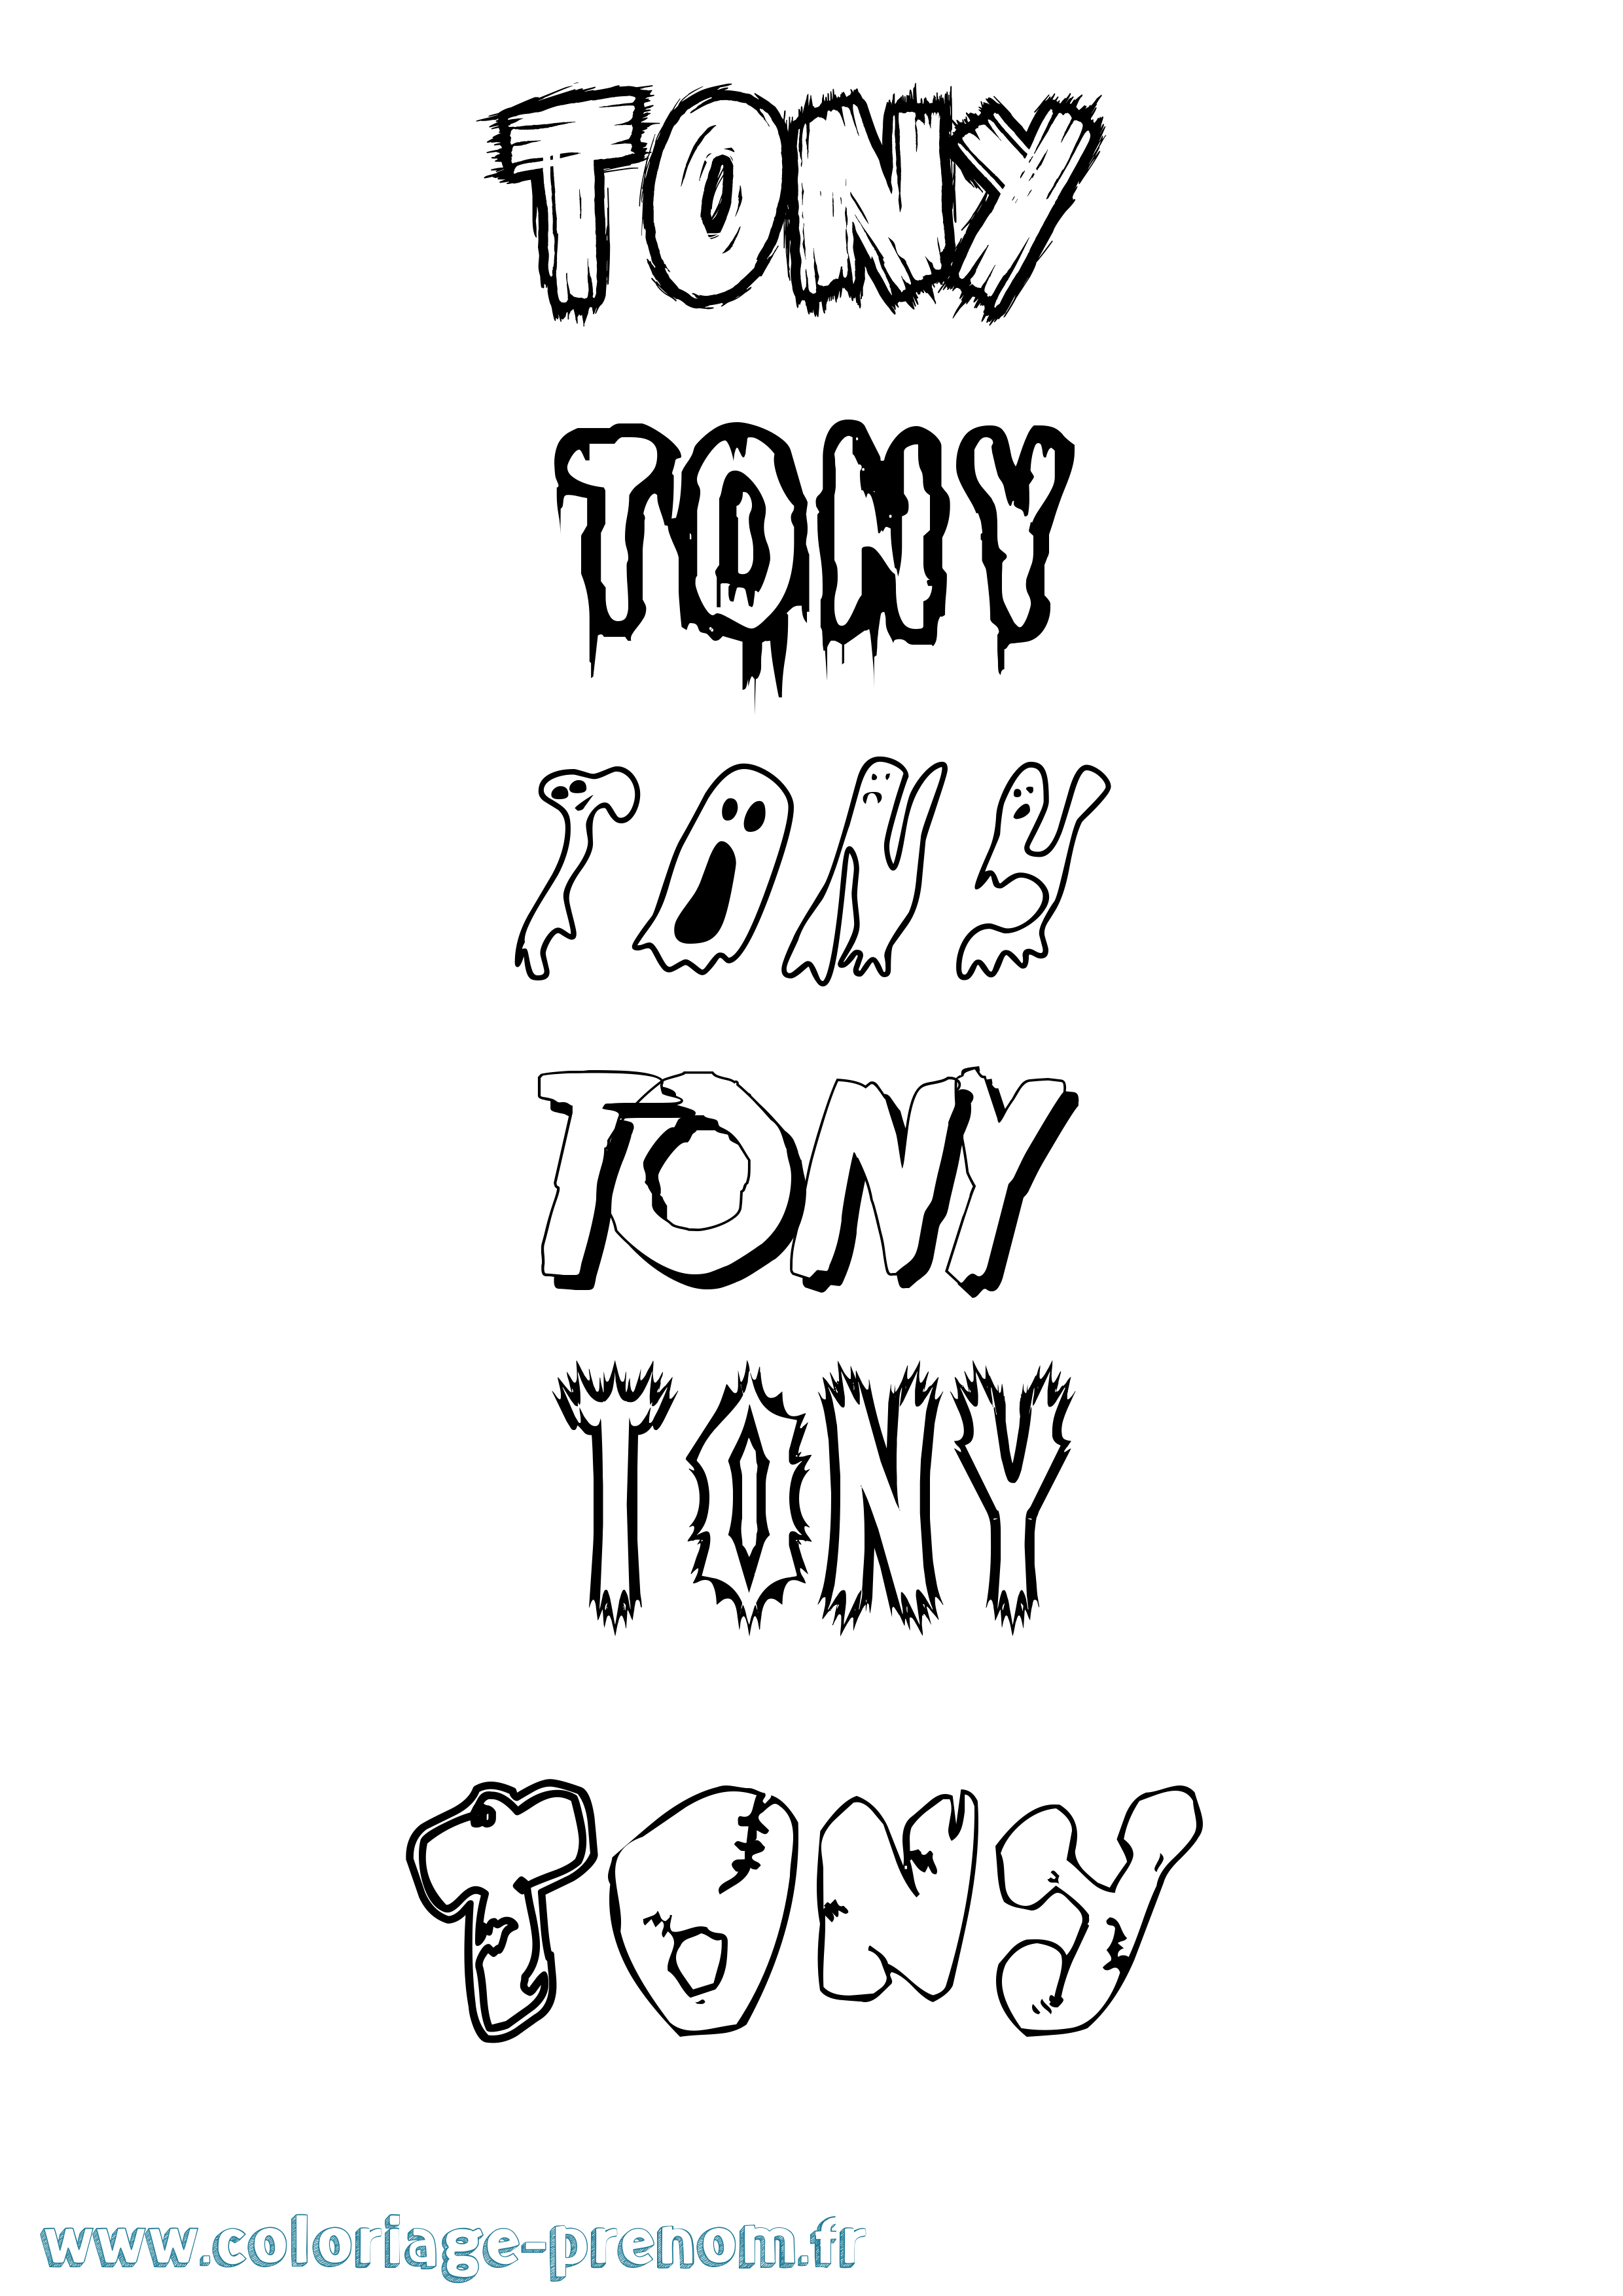 Coloriage prénom Tony Frisson